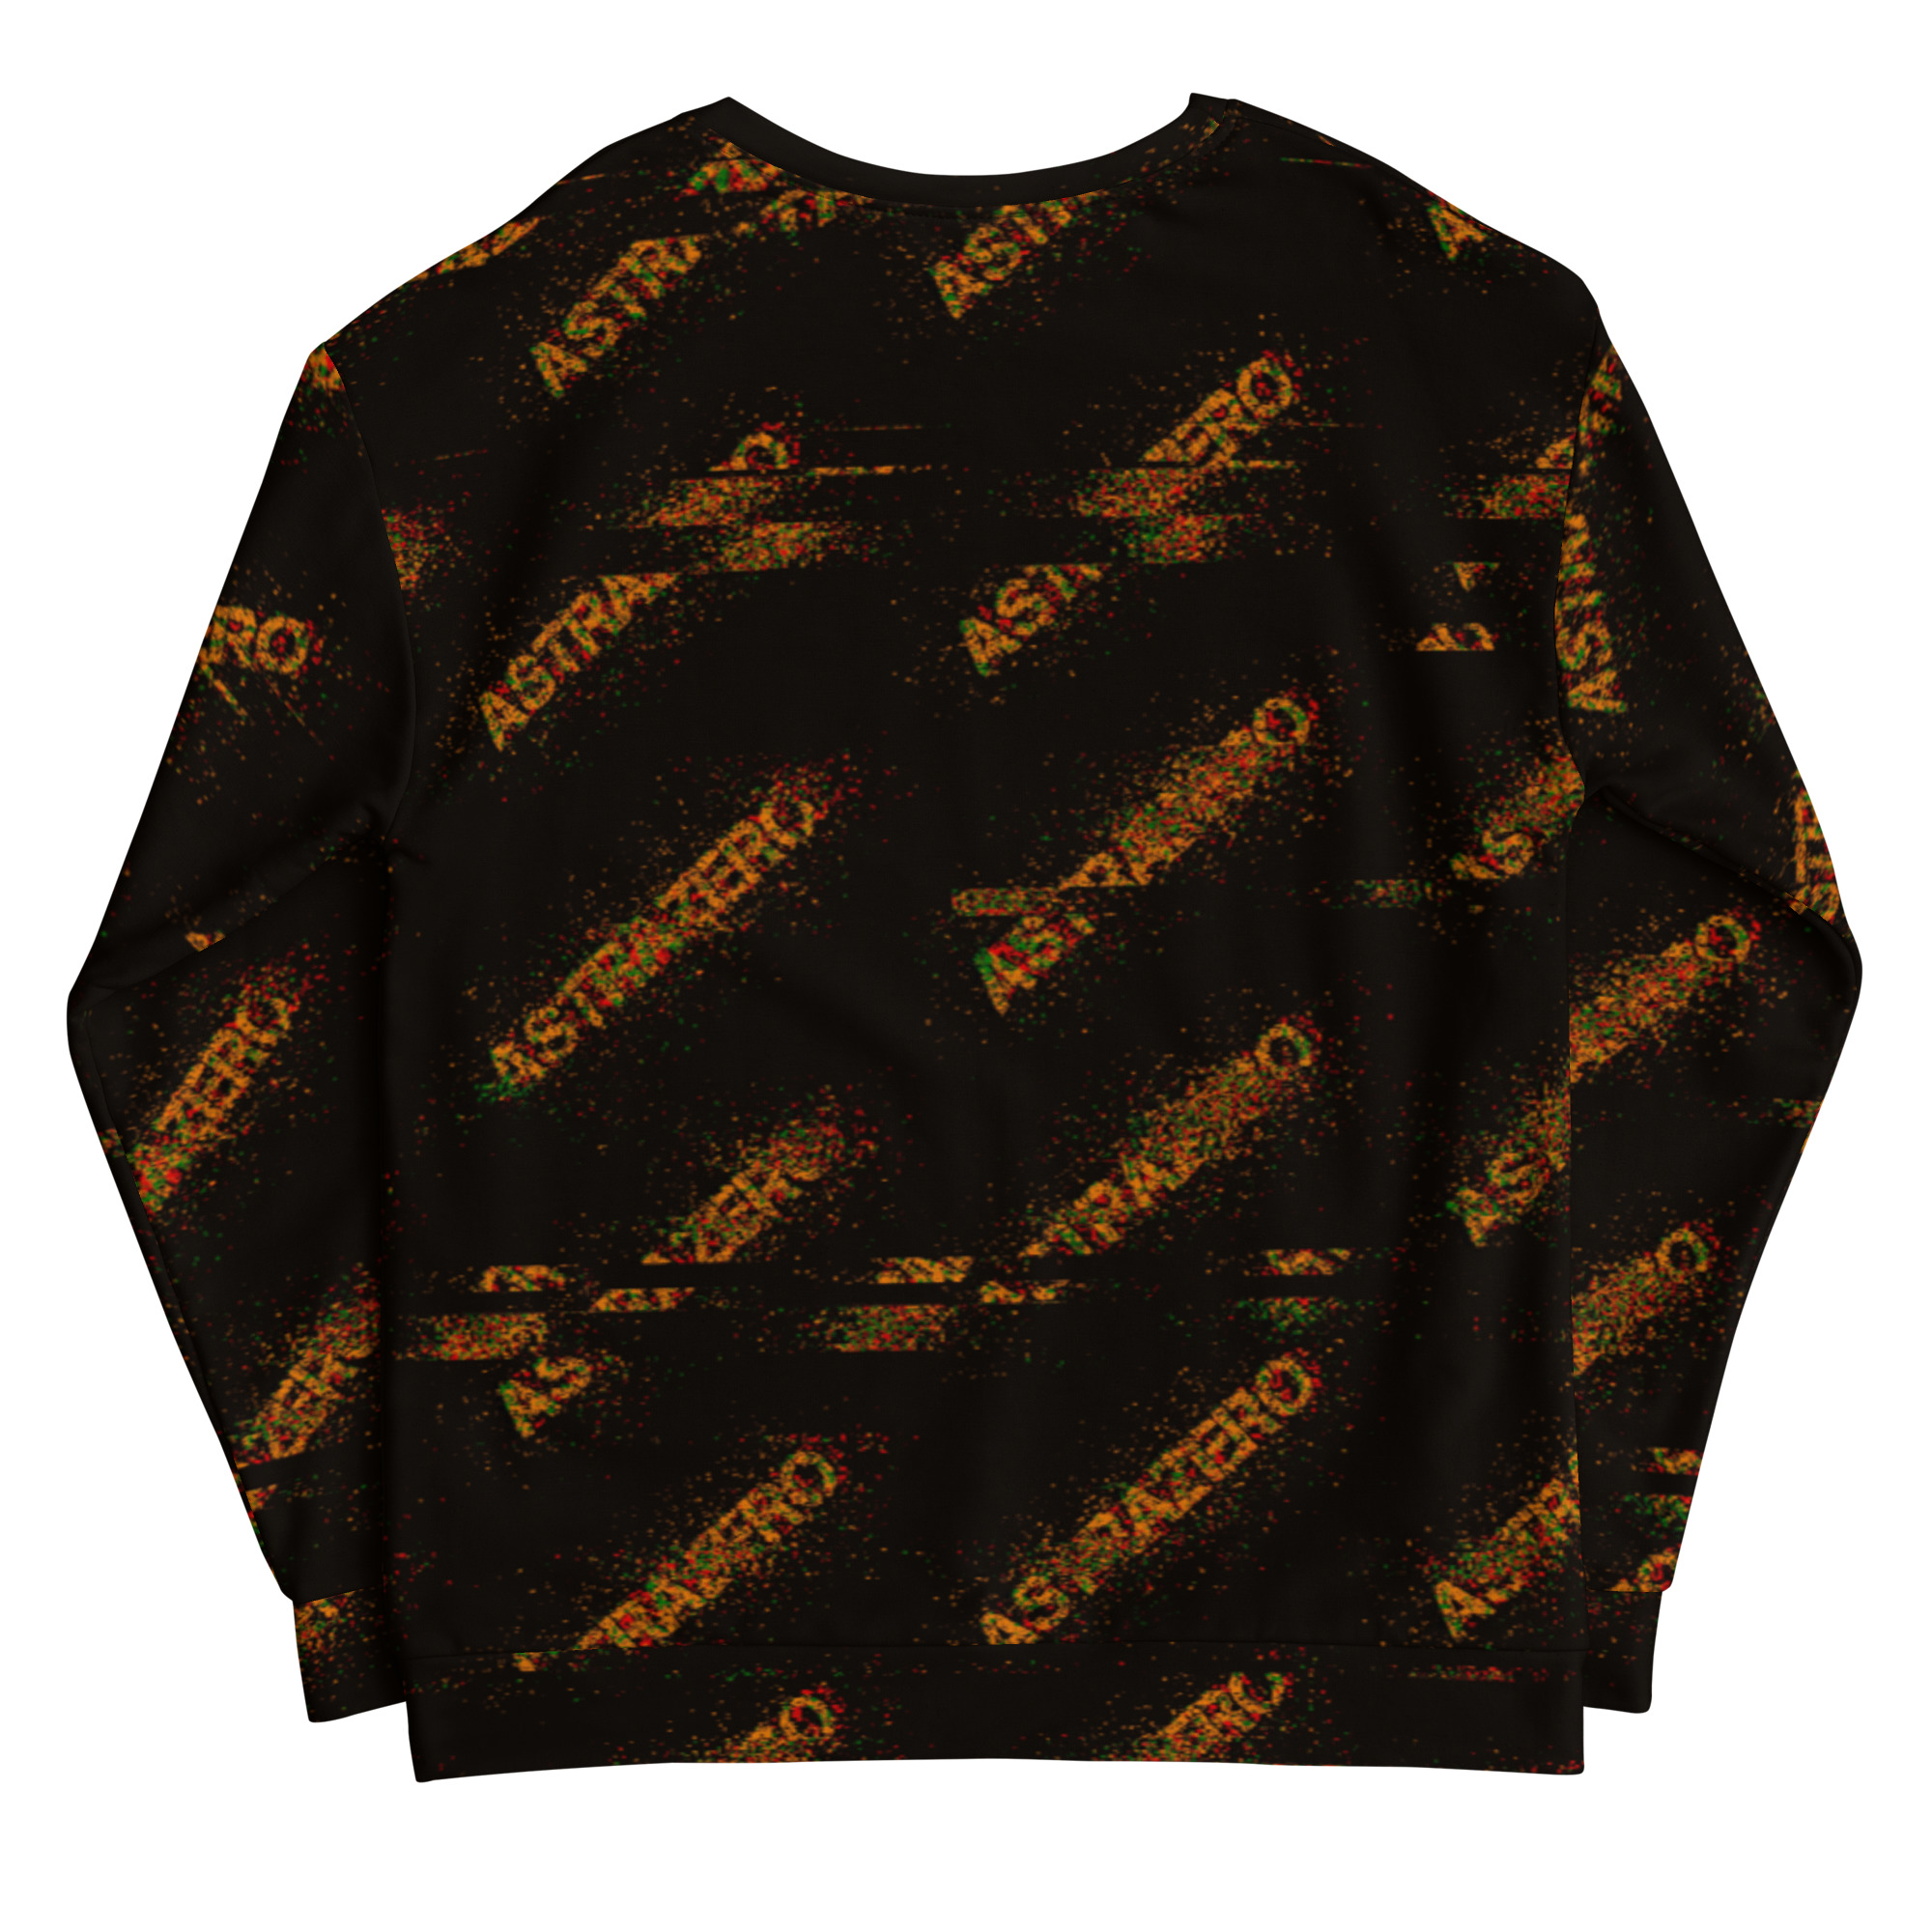 Featured image for “ASTRAZERO Glitch Orange - Unisex Sweatshirt”